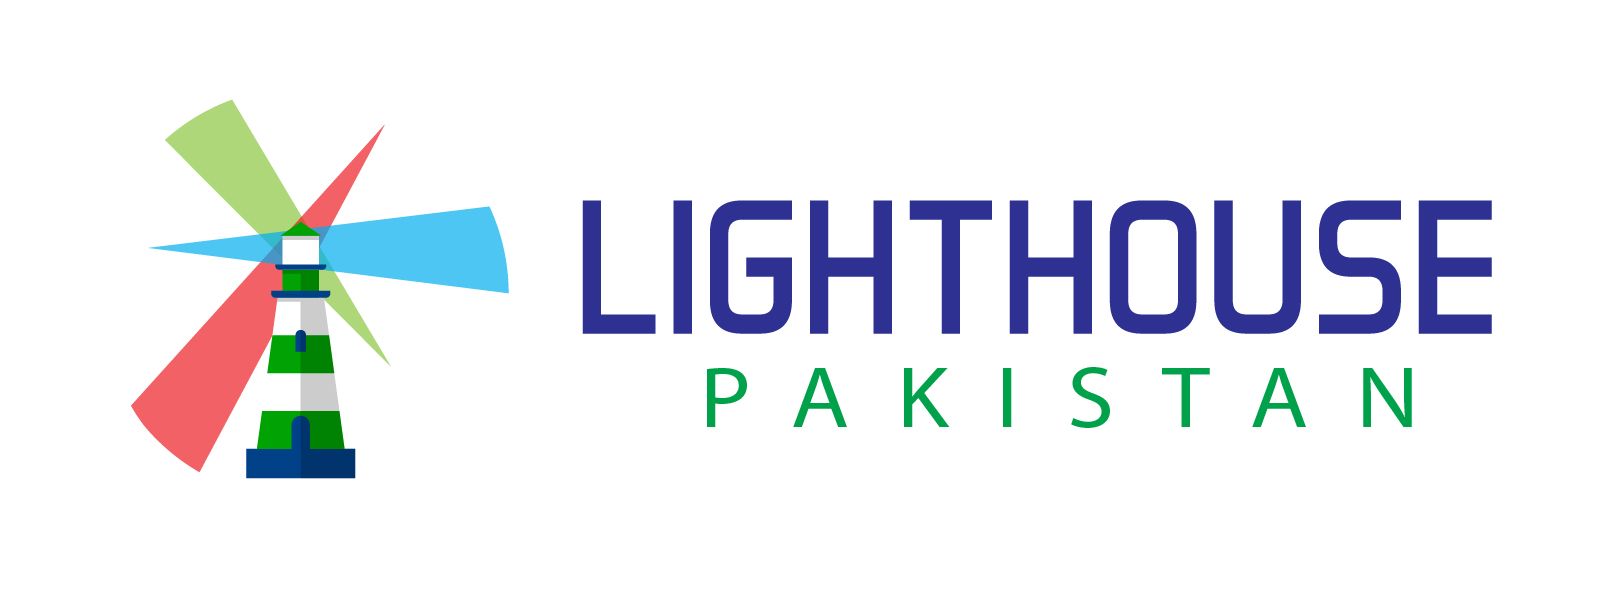 Lighthouse Pakistan